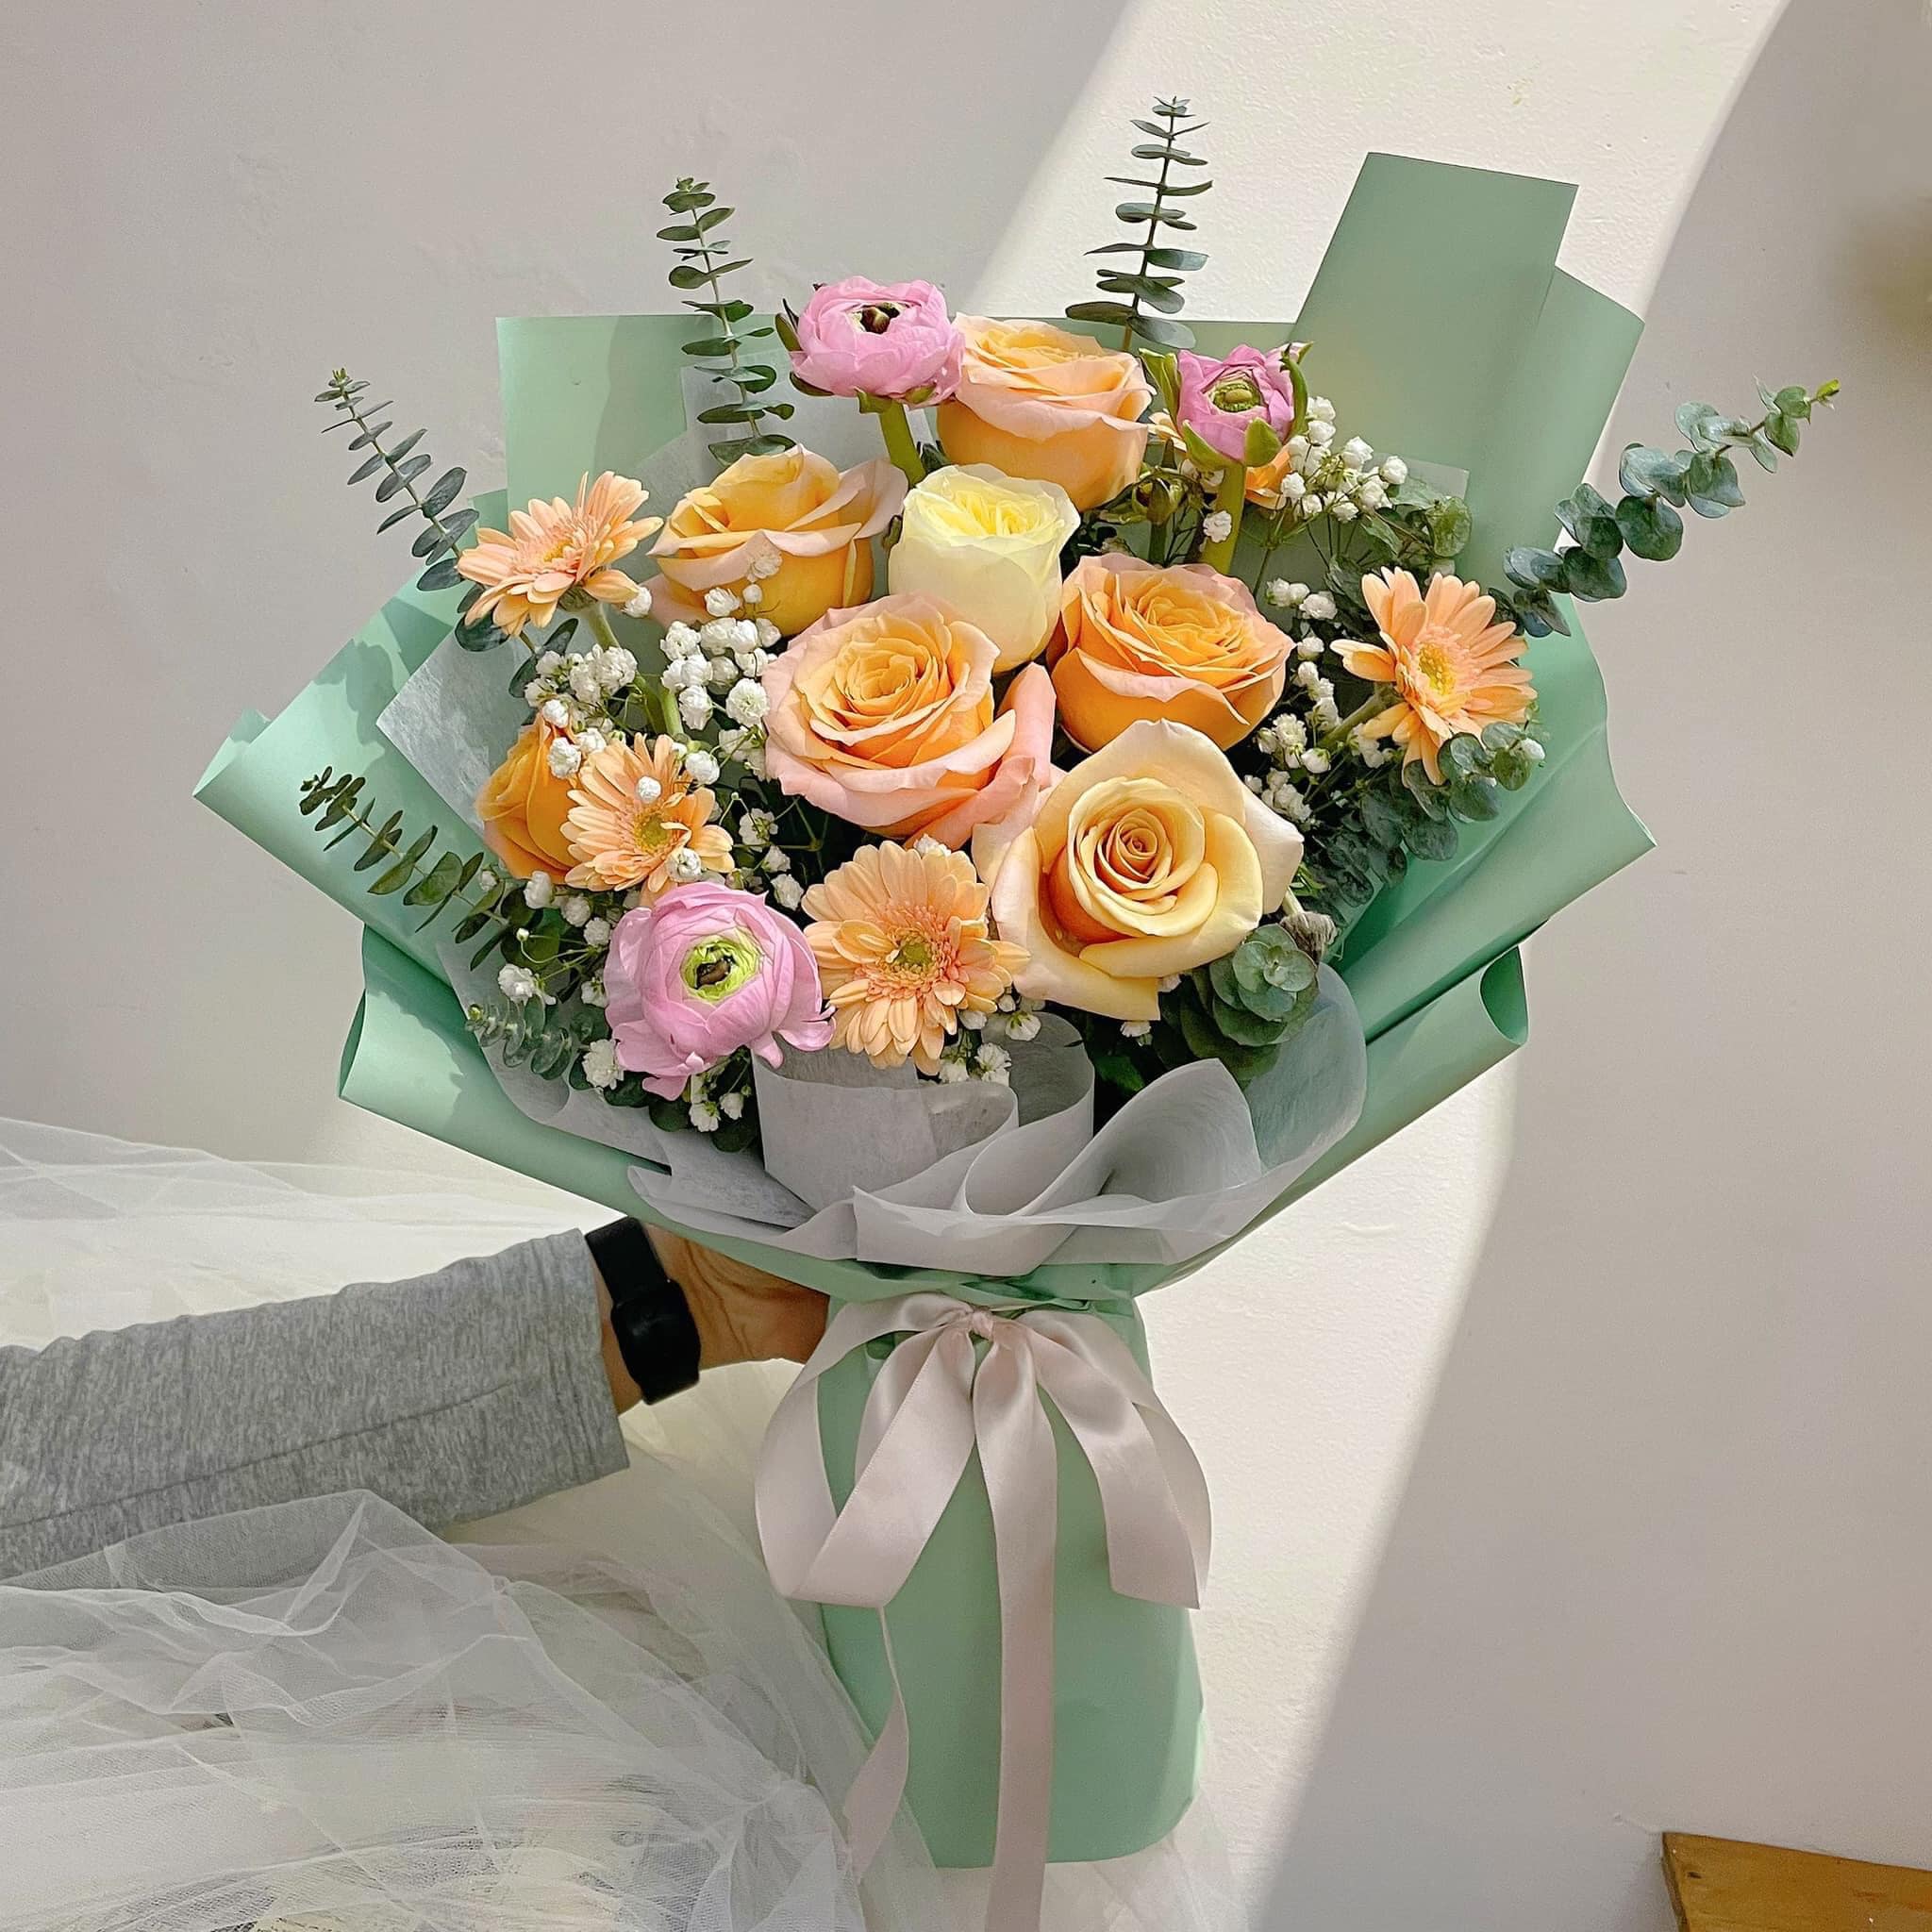 Ánh Nguyệt - Cửa hàng hoa tươi Hà Tĩnh chuyên cung cấp hoa sự kiện đẹp 